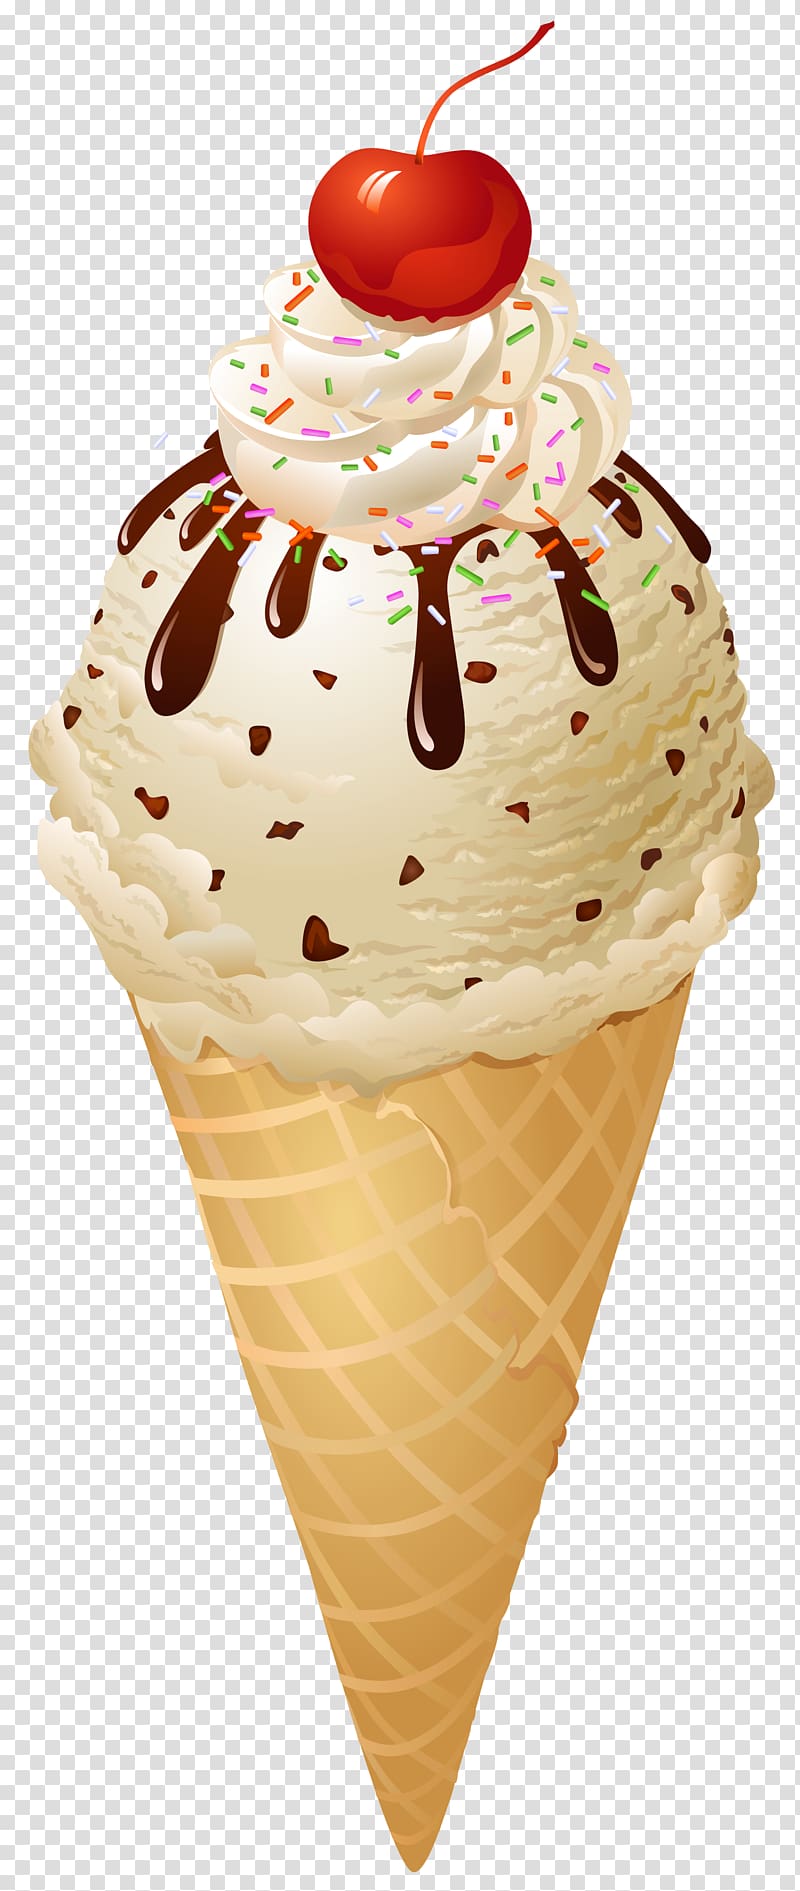 Ice cream cone Chocolate ice cream, Ice cream transparent background PNG clipart